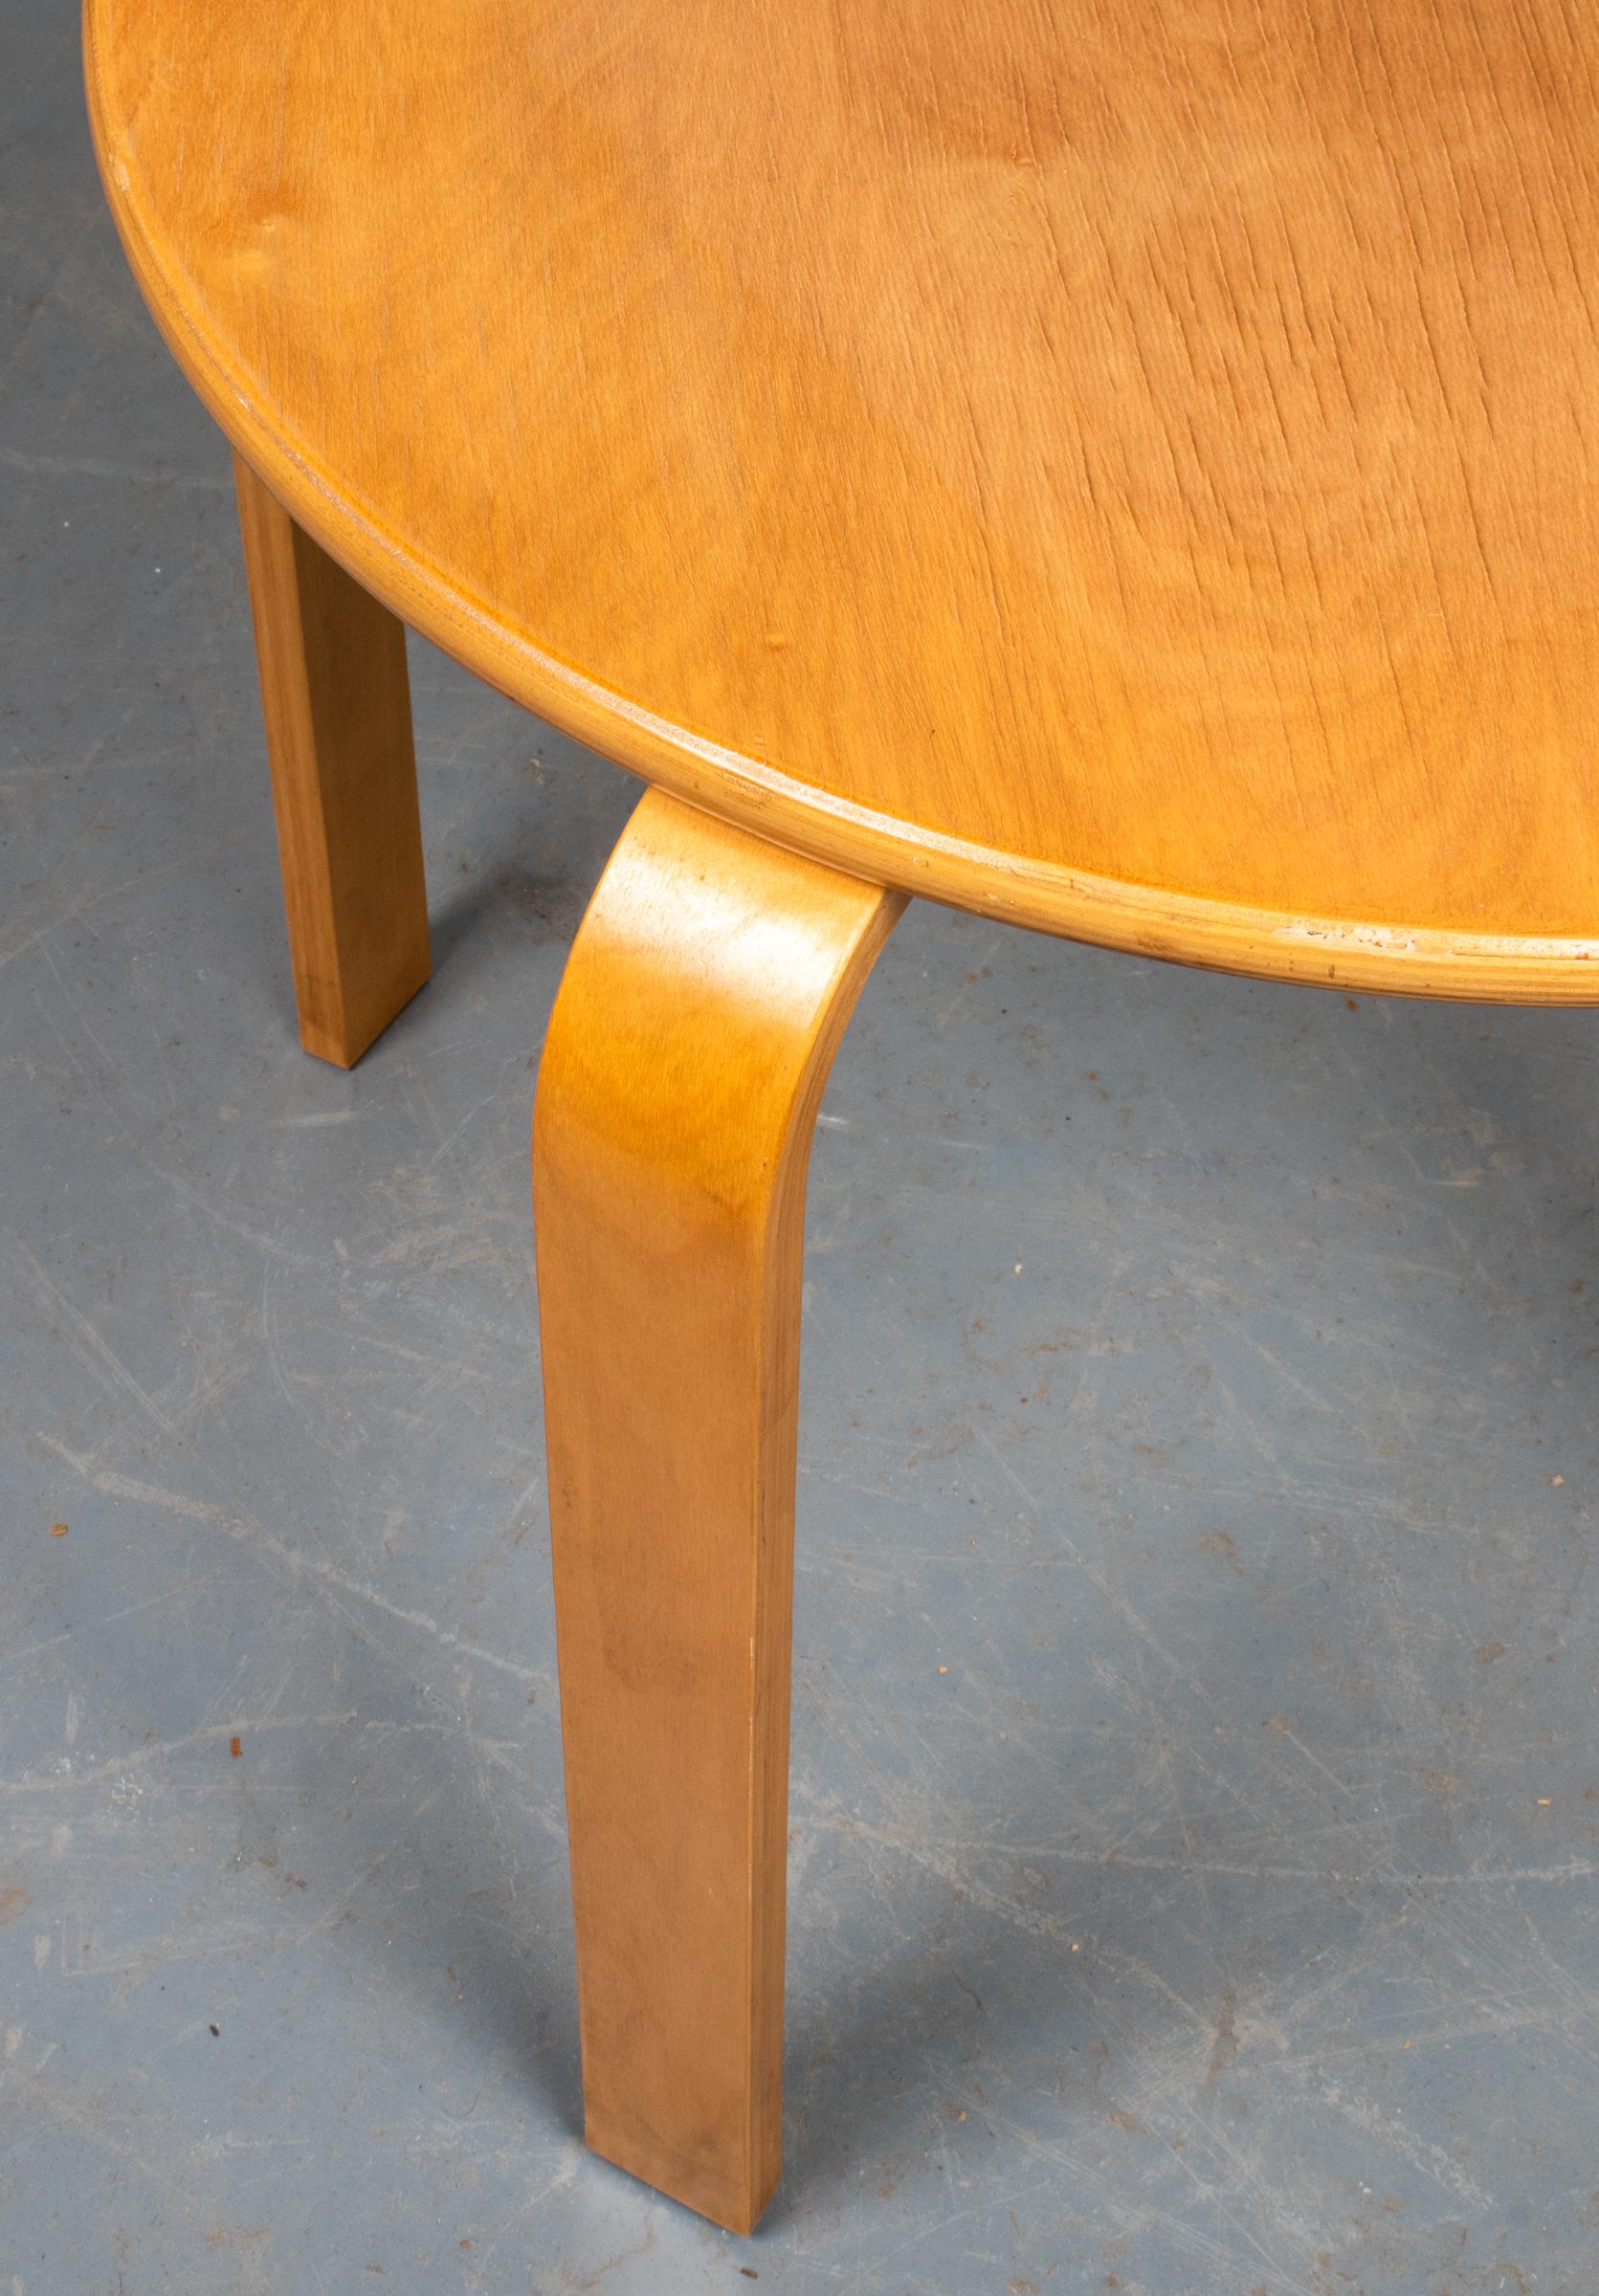 European Alvar Aalto Style Mid-Century Modern Side Table